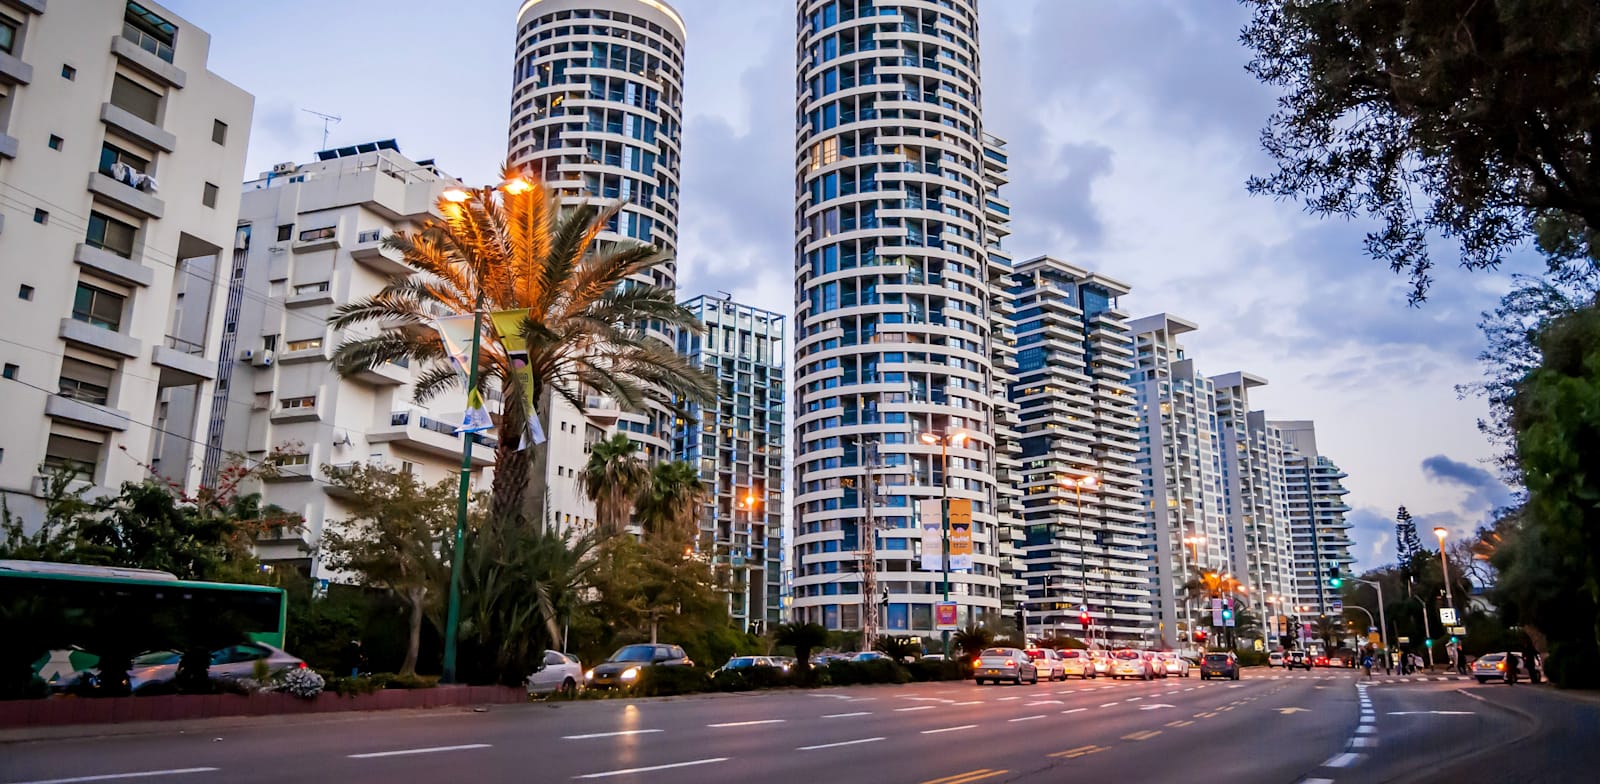 מגדלי YOO  בתל אביב. לפי הנתונים, ככל שמחירי הדירות הנרכשות גבוהים יותר, שיעור המשכנתה יורד / צילום: Shutterstock